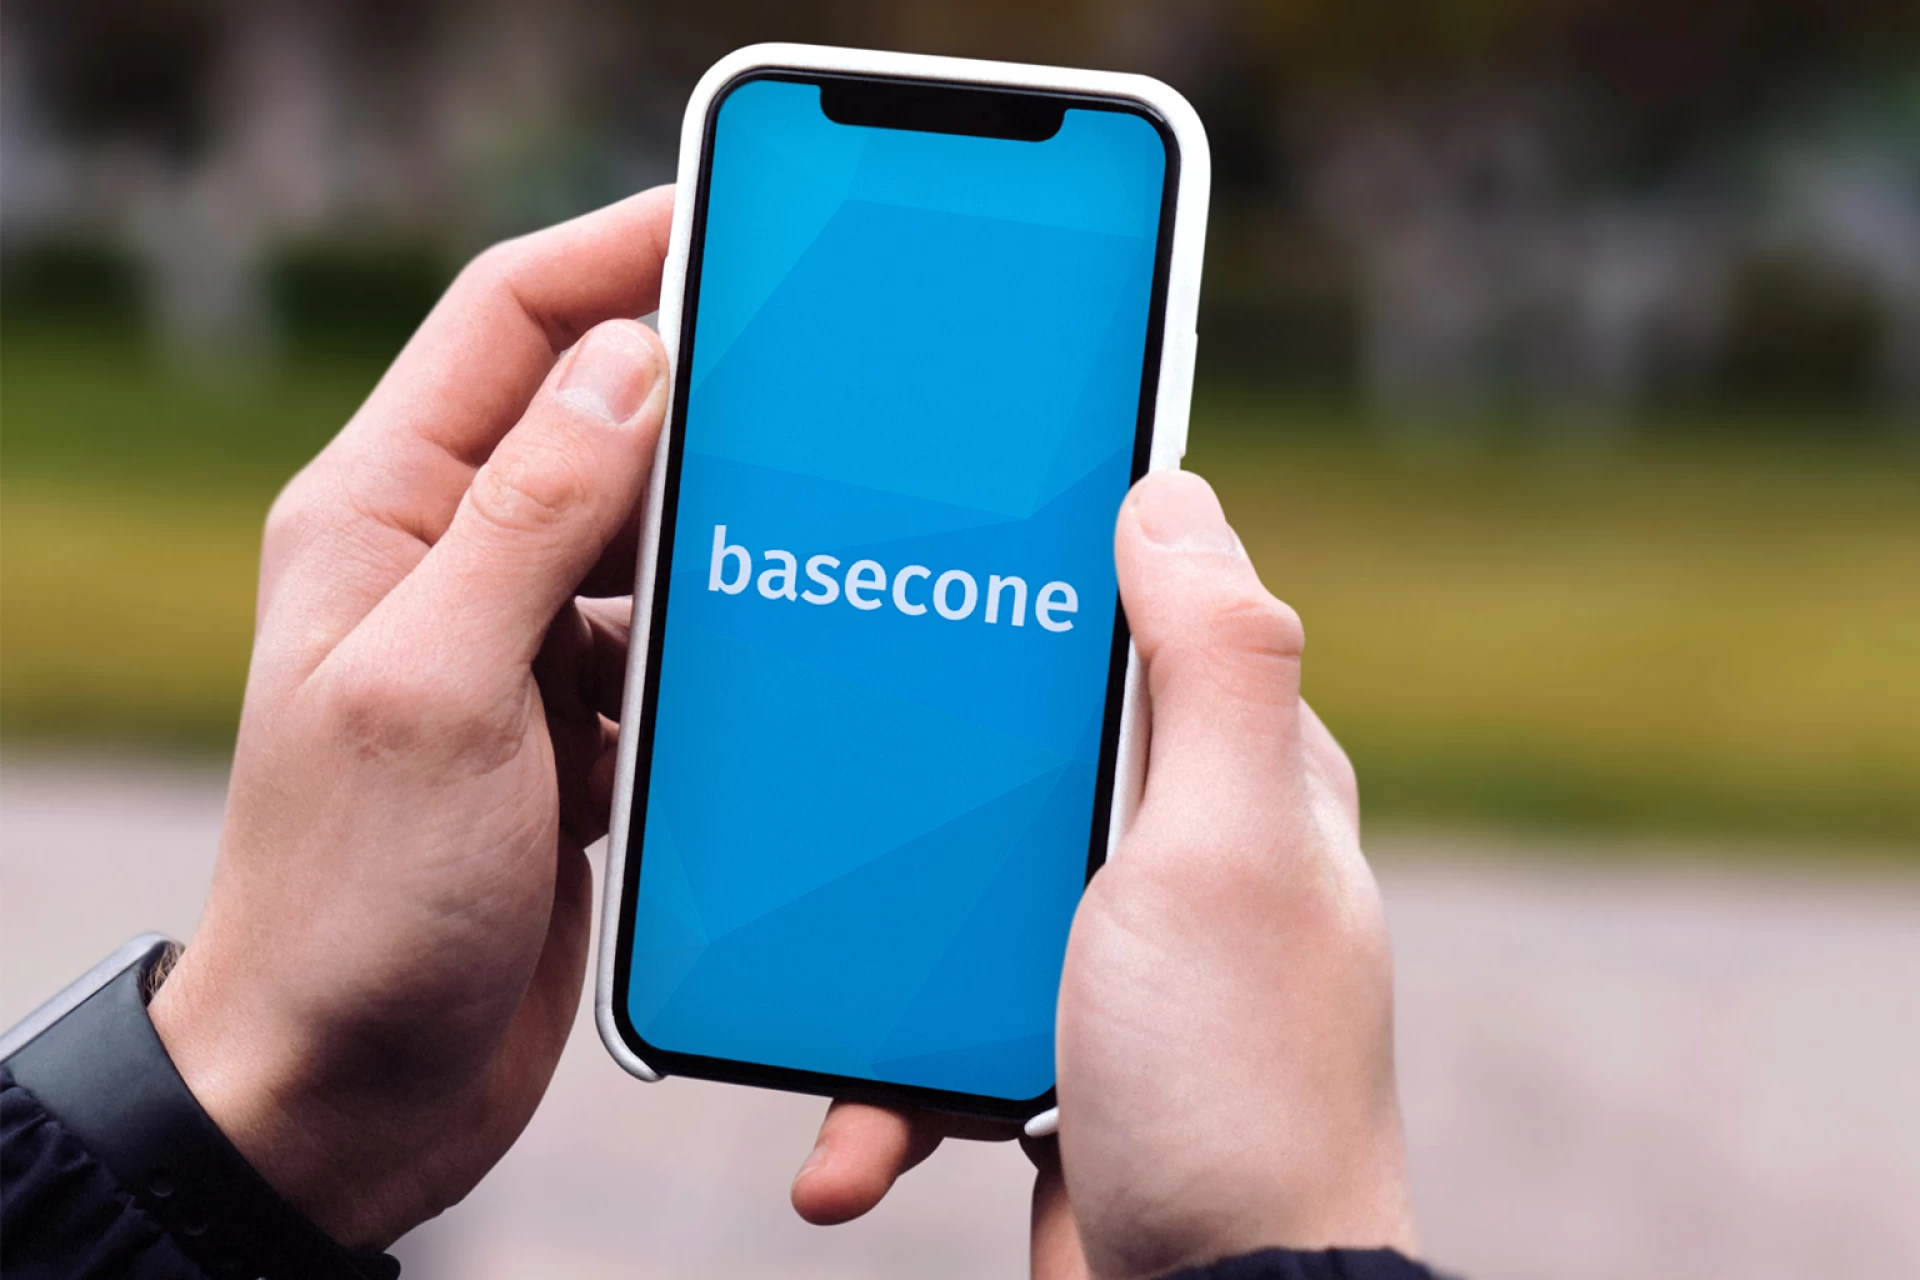 Koppel onFact met 6 nieuwe boekhoudpakketten via Basecone